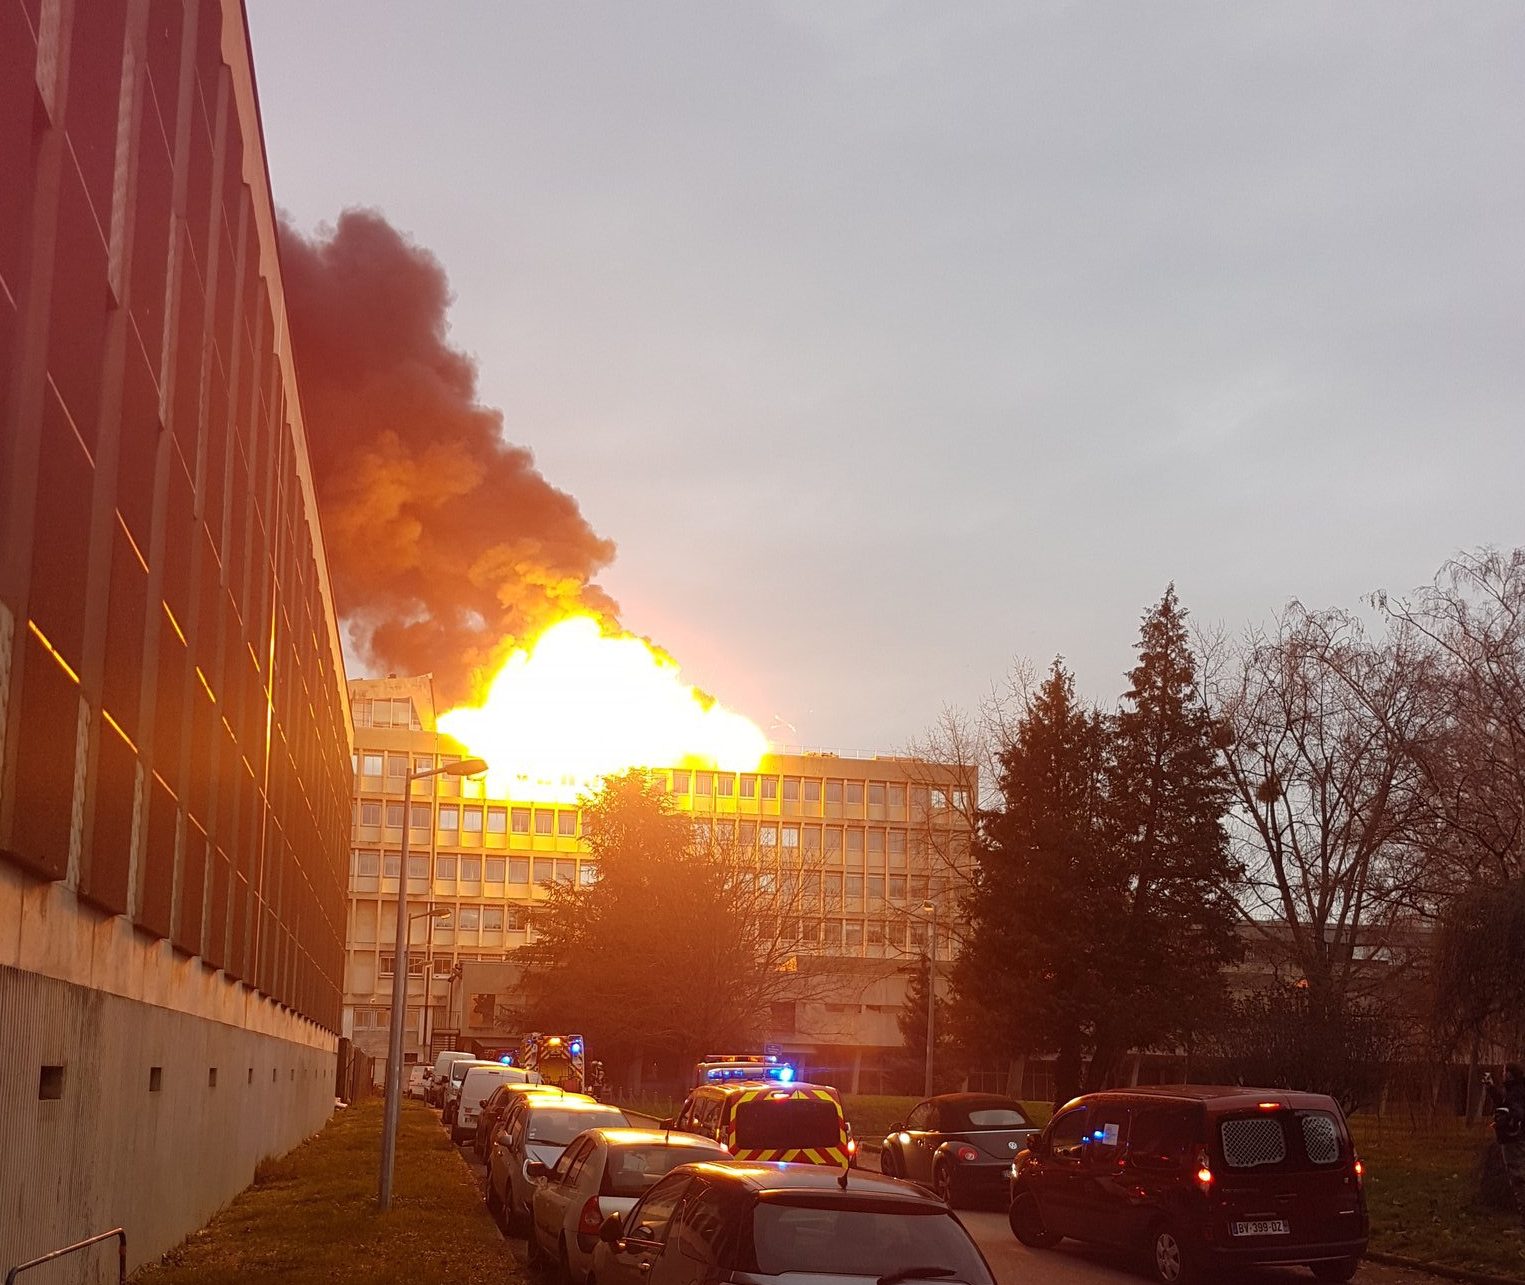 У Франції в університеті сталася серія вибухів: відомо про одного постраждалого